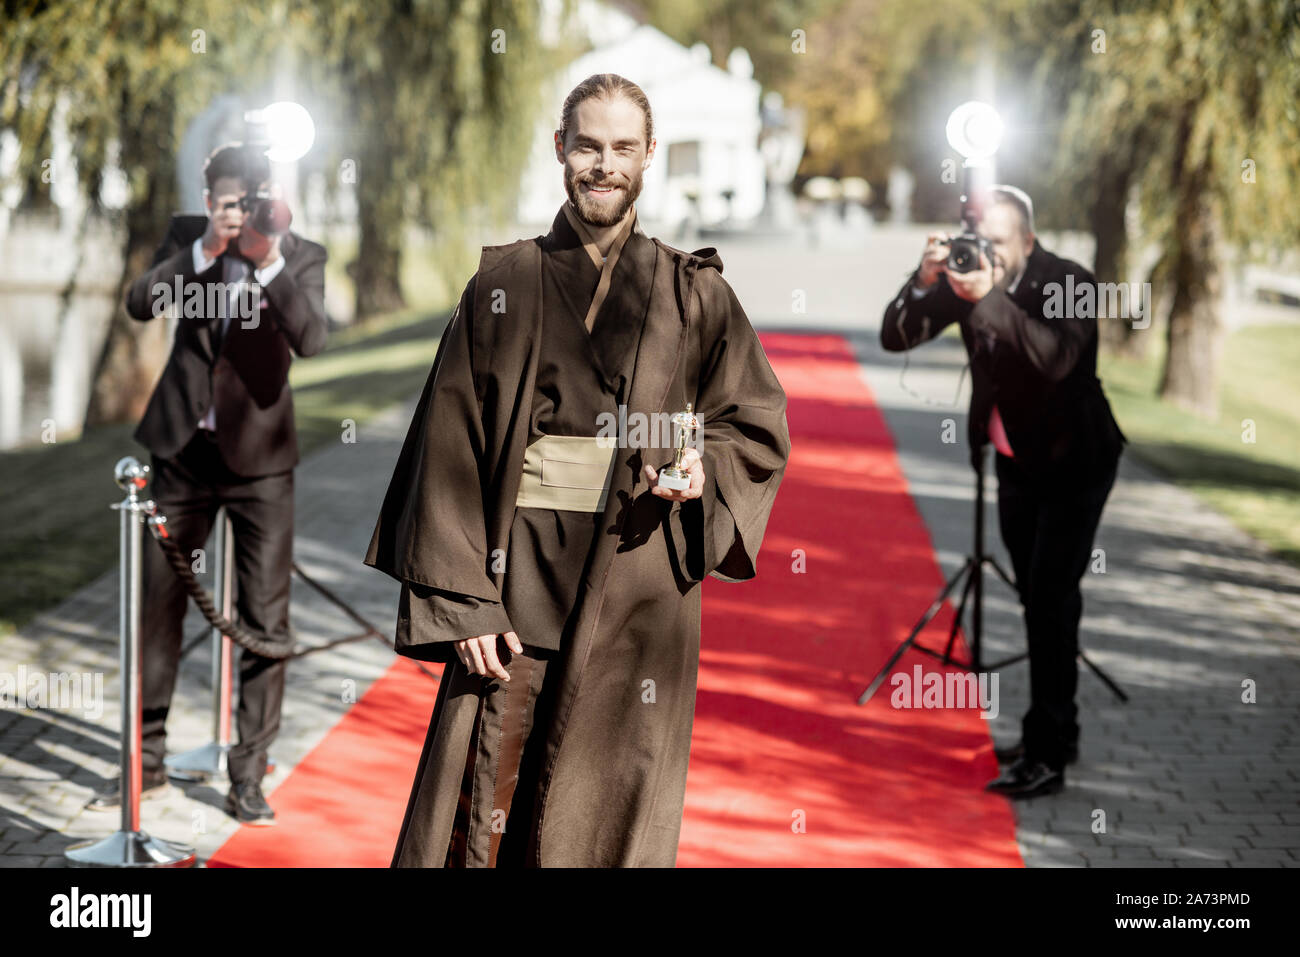 L'homme en costume comme un personnage de film bien connu à pied avec des reporters photo ennuyeux sur le tapis rouge lors de la cérémonie de remise des prix Banque D'Images